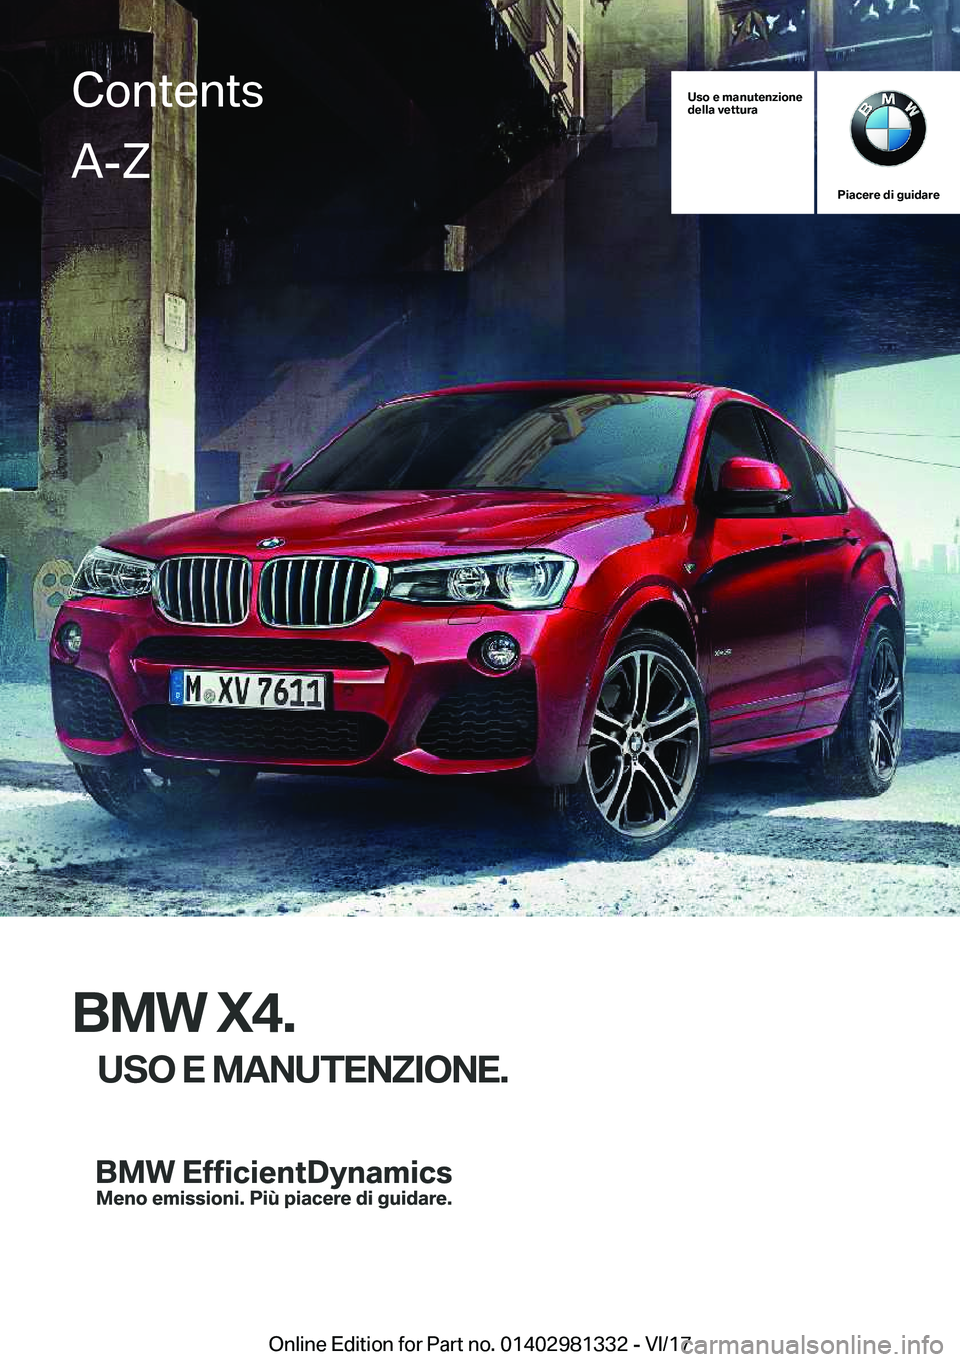 BMW X4 2018  Libretti Di Uso E manutenzione (in Italian) �U�s�o��e��m�a�n�u�t�e�n�z�i�o�n�e
�d�e�l�l�a��v�e�t�t�u�r�a
�P�i�a�c�e�r�e��d�i��g�u�i�d�a�r�e
�B�M�W��X�4�.
�U�S�O��E��M�A�N�U�T�E�N�Z�I�O�N�E�.
�C�o�n�t�e�n�t�s�A�-�Z
�O�n�l�i�n�e� �E�d�i�t